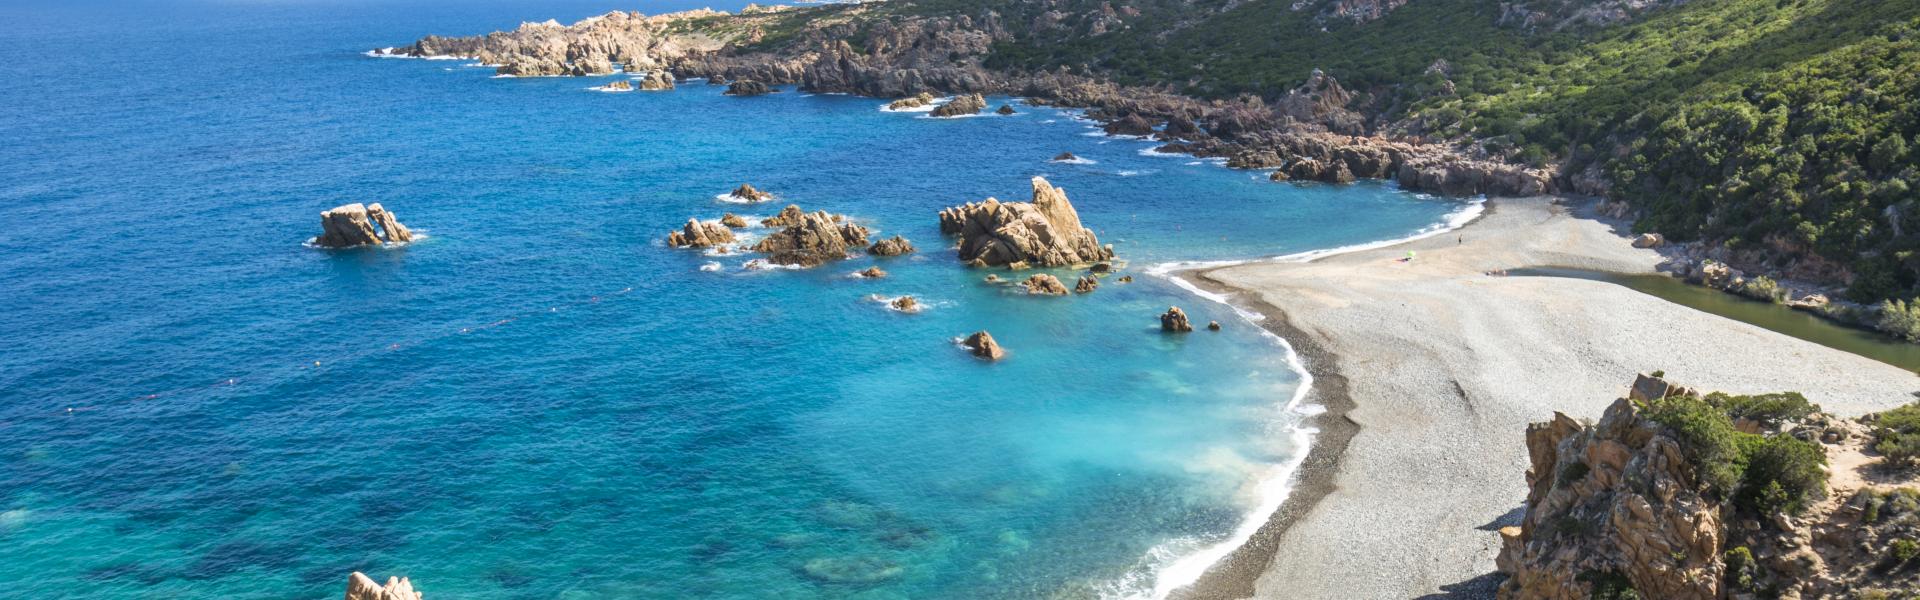 Ferienwohnungen und Ferienhäuser auf Sardinien - e-domizil